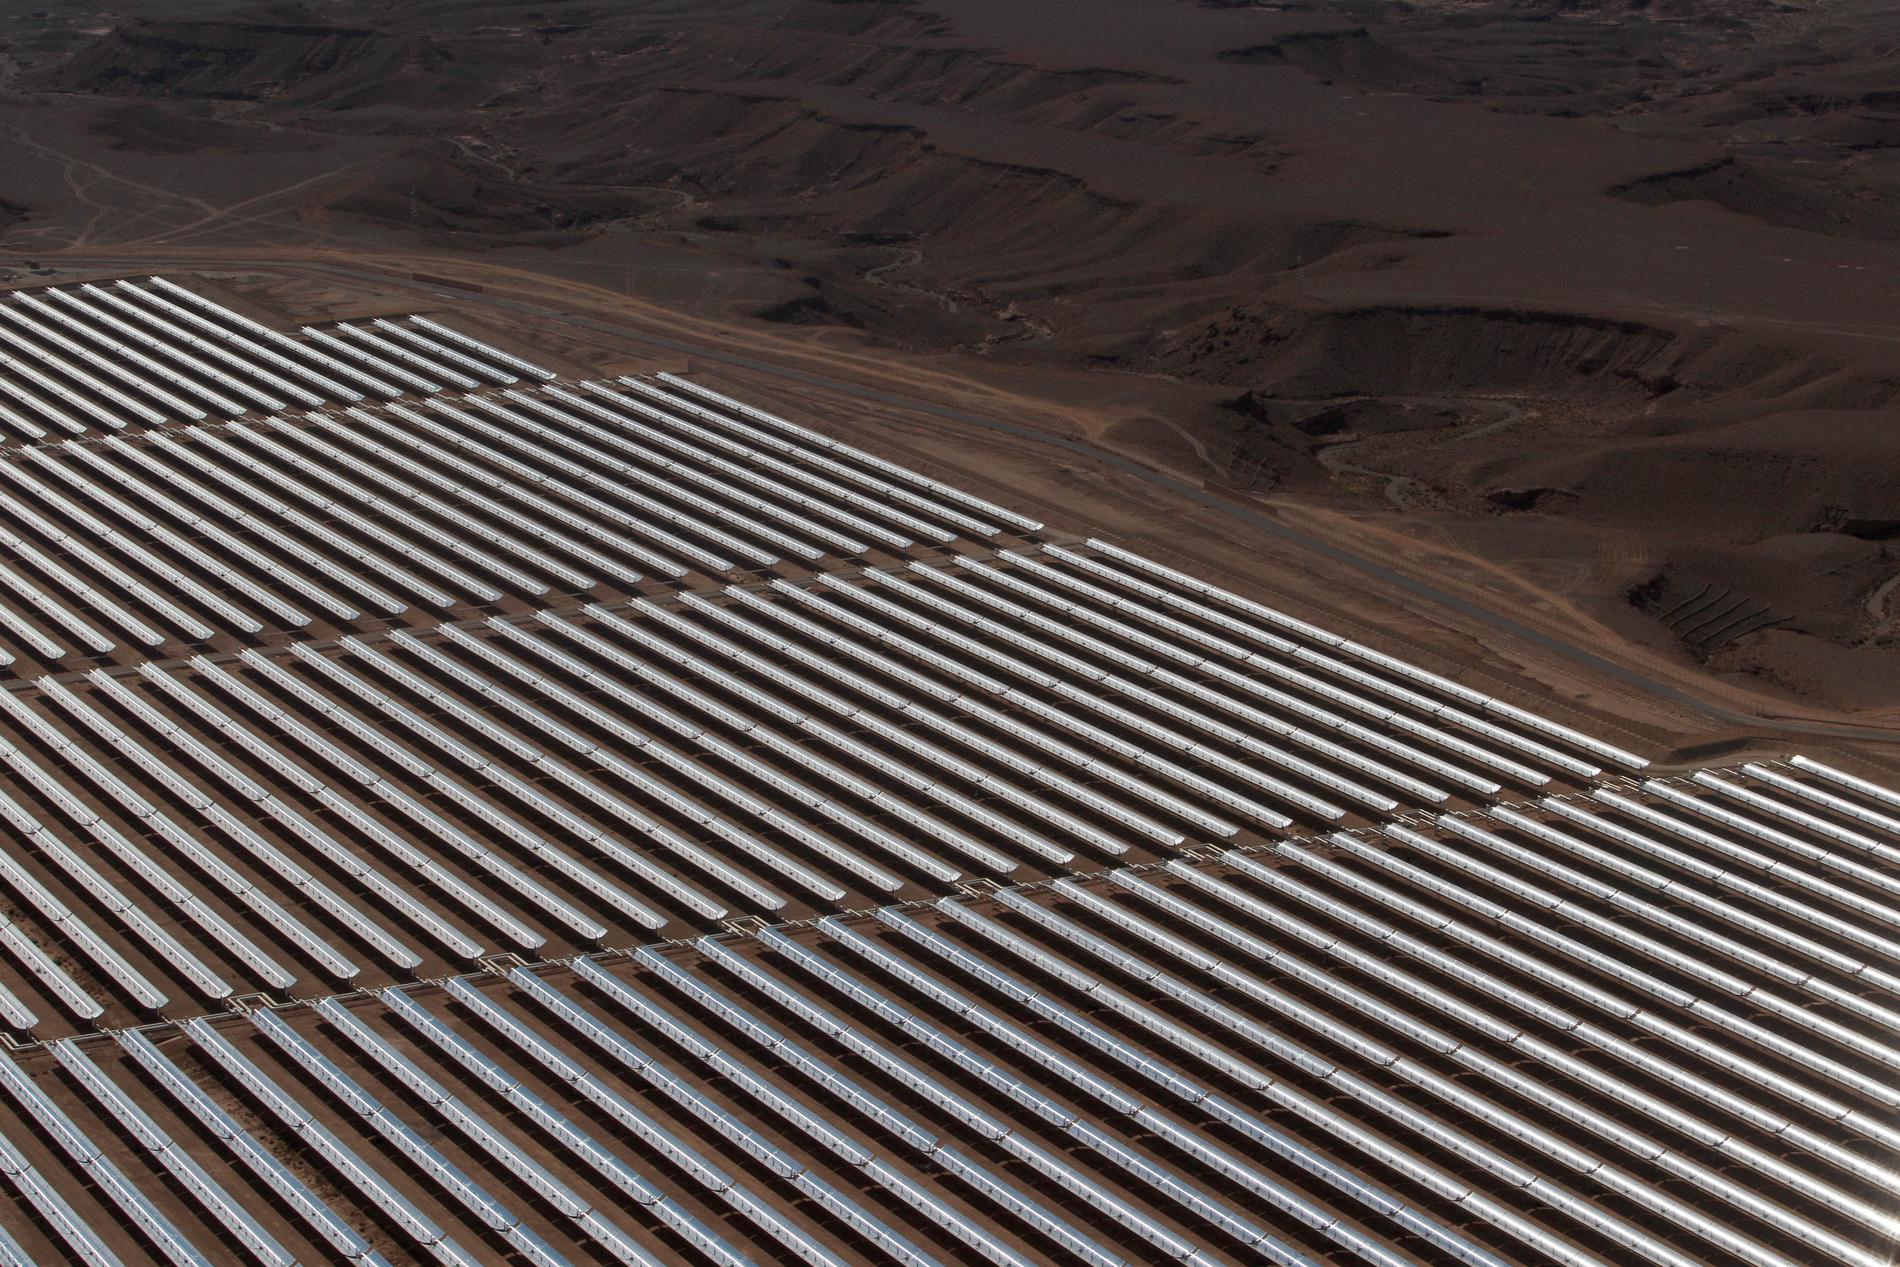 En av världens största parker av solpaneler i Ouarzazate i Marocko. De kan bidra till att fukten i Sahara ökar, visar en ny studie. Arkivbild.